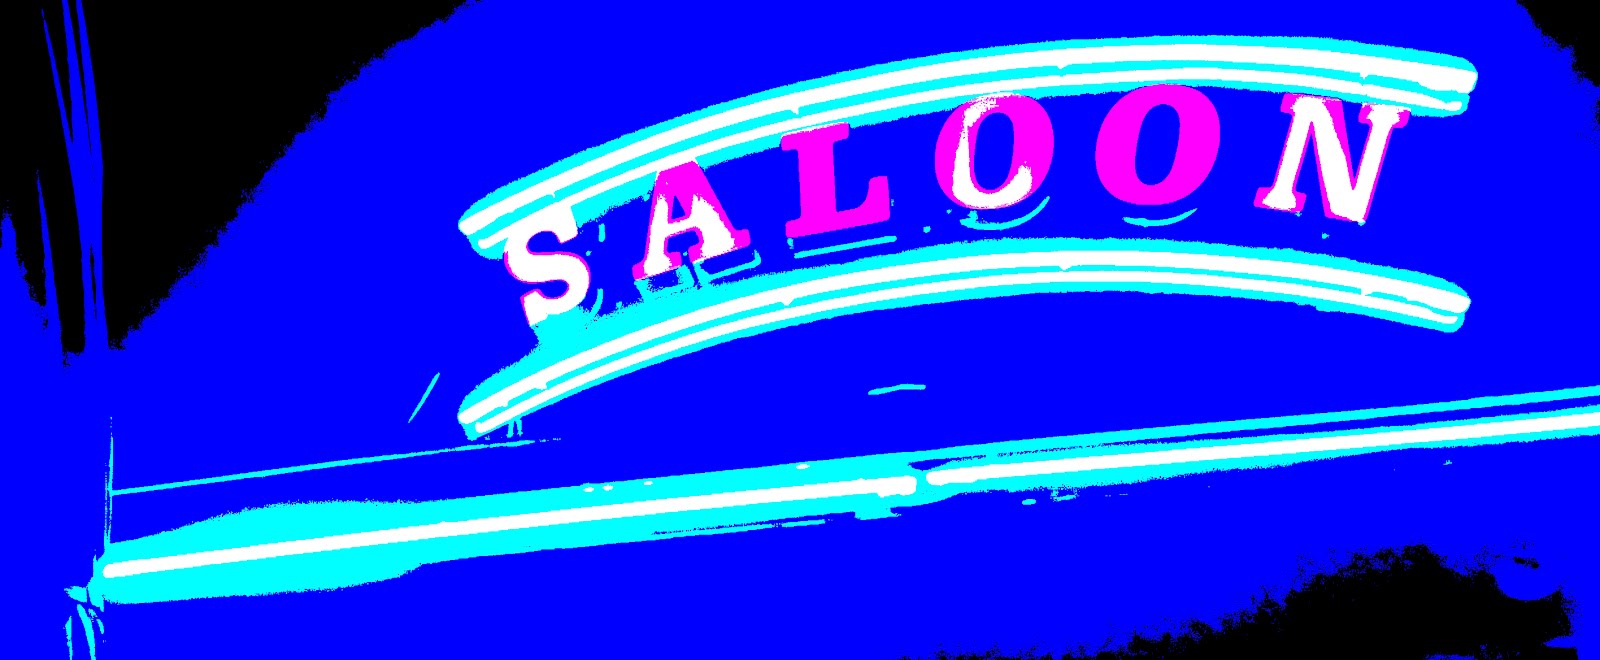 Le Saloon